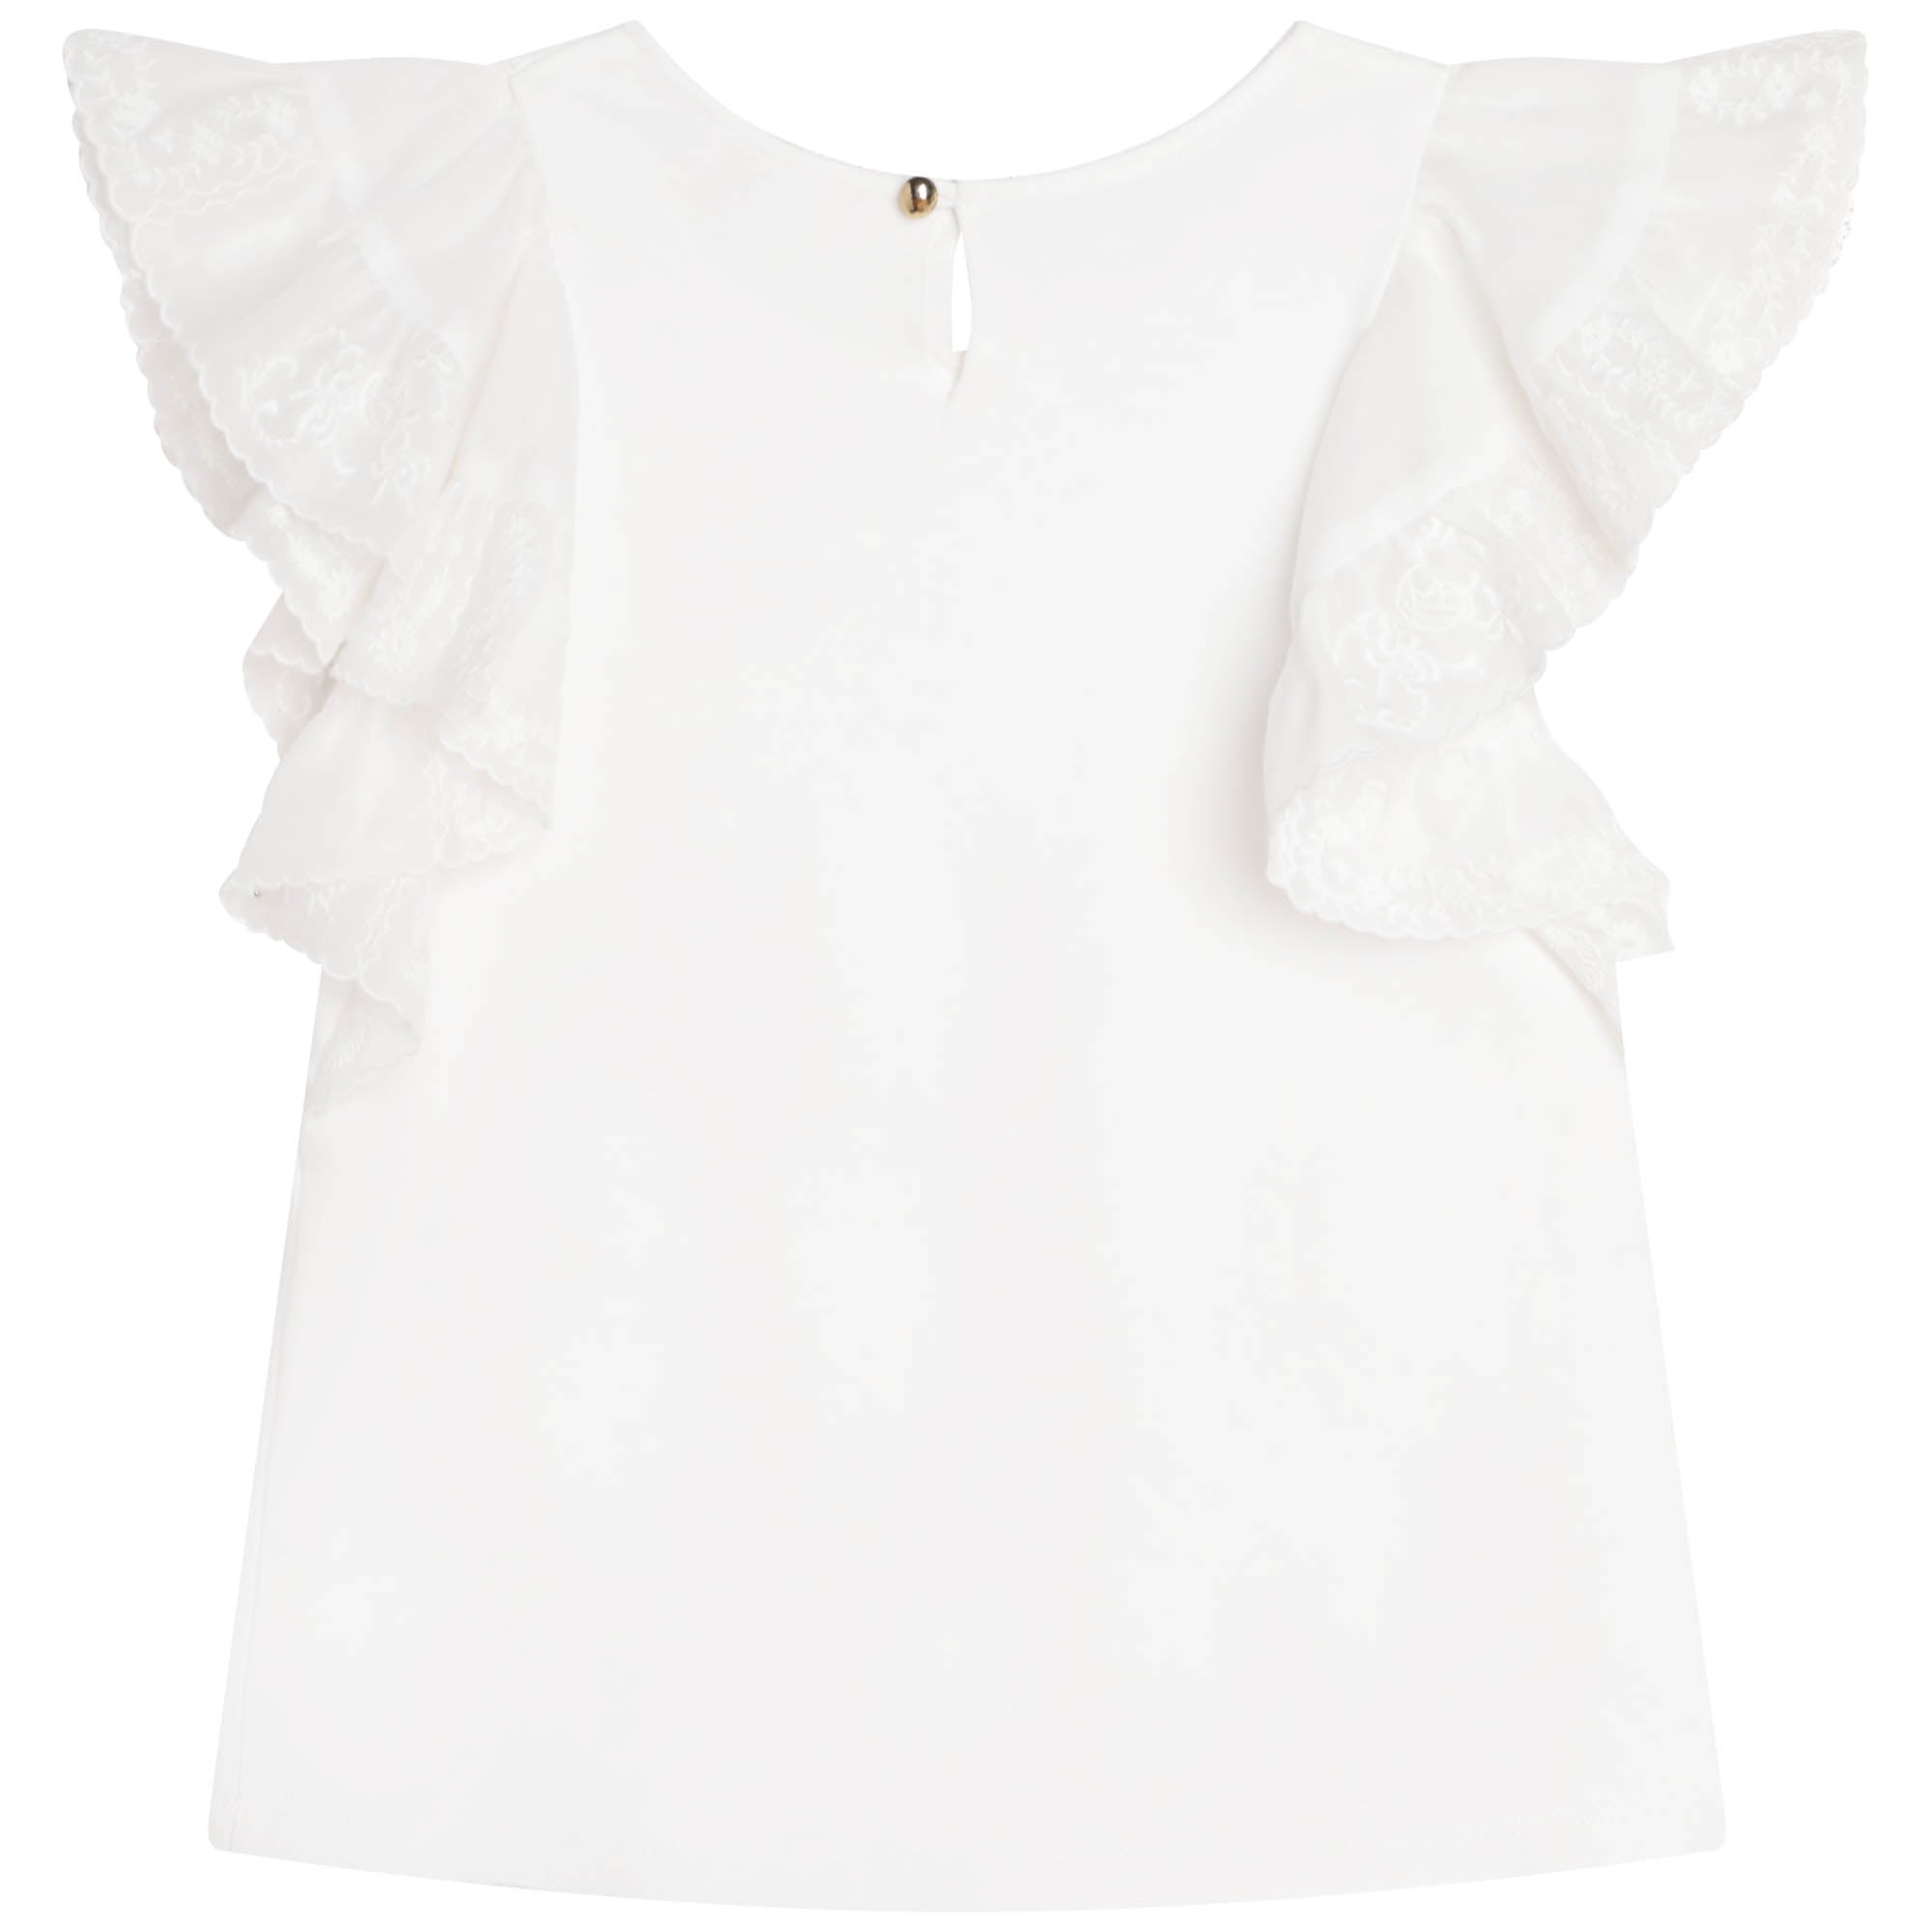 Girls White Ruffled Cotton T-Shirt